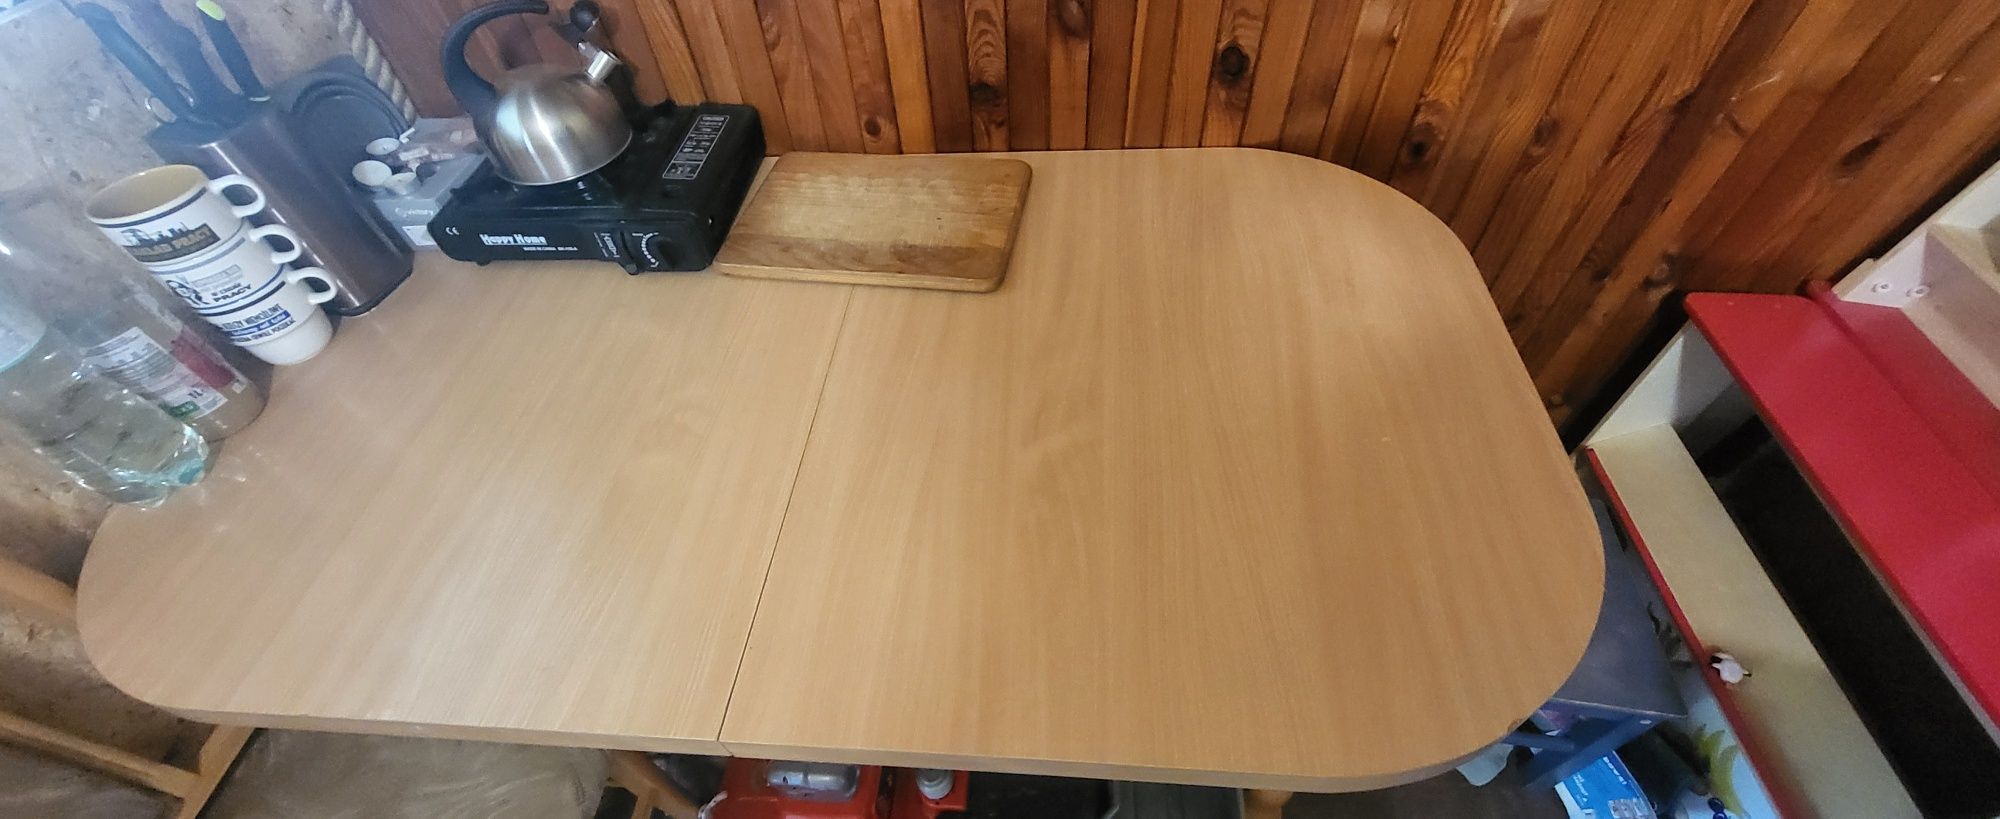 Duży owalny stół rozsowany i dwa krzesła drewniane